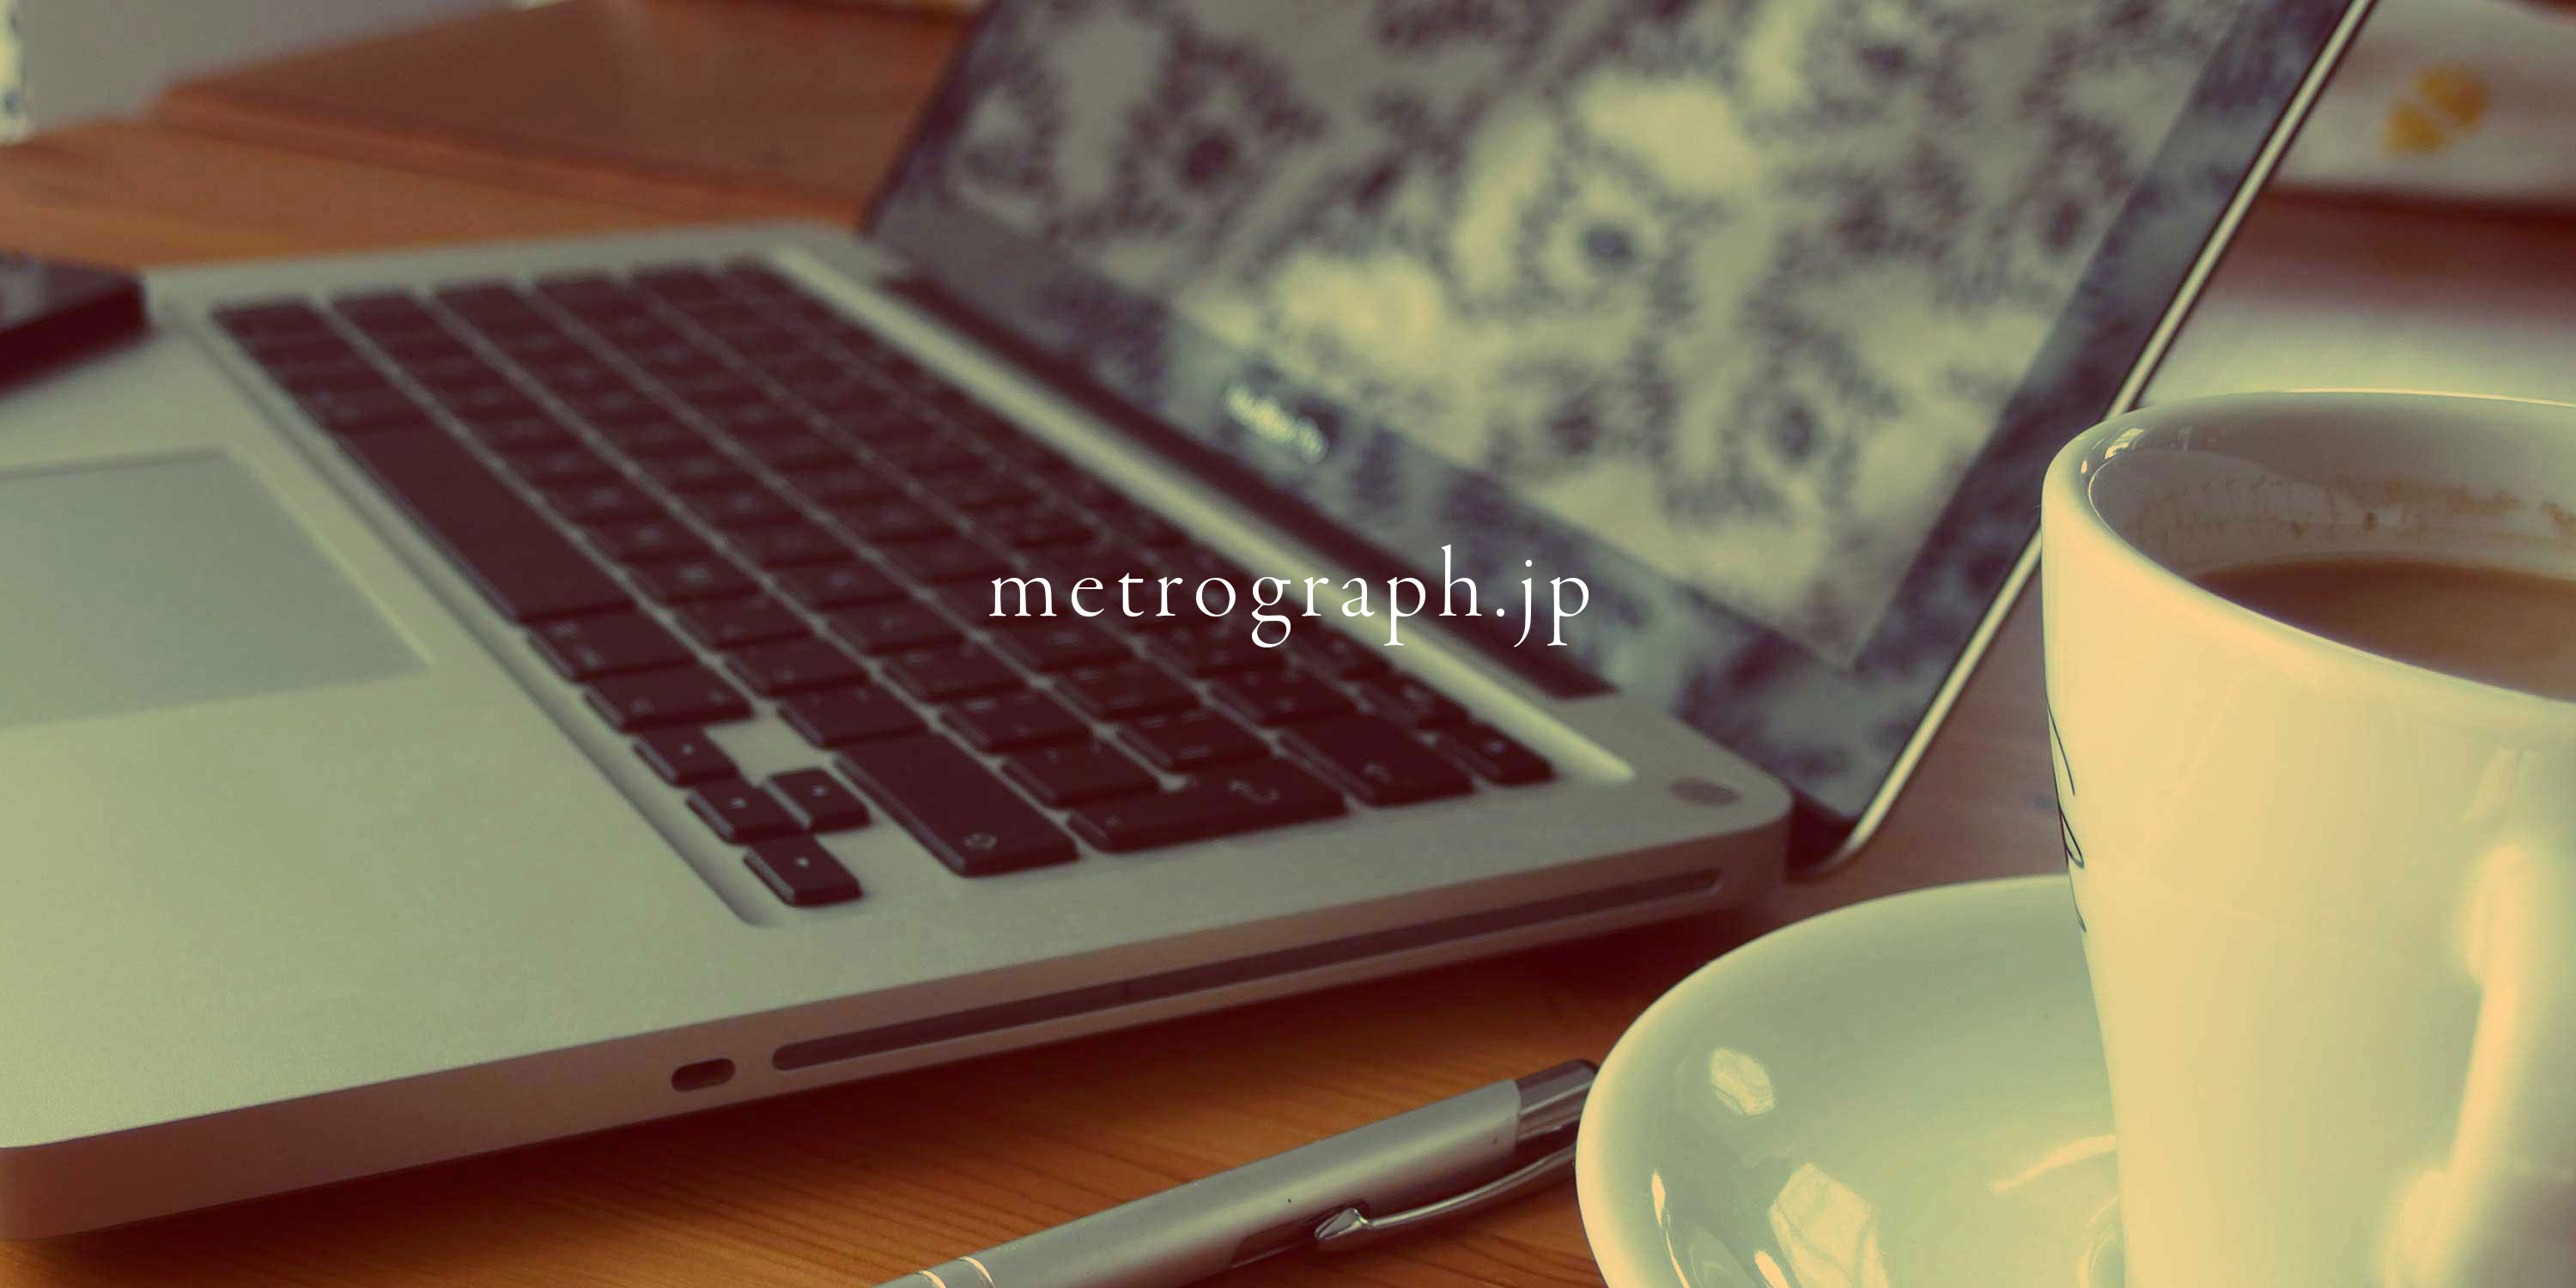 about metrograph.jp